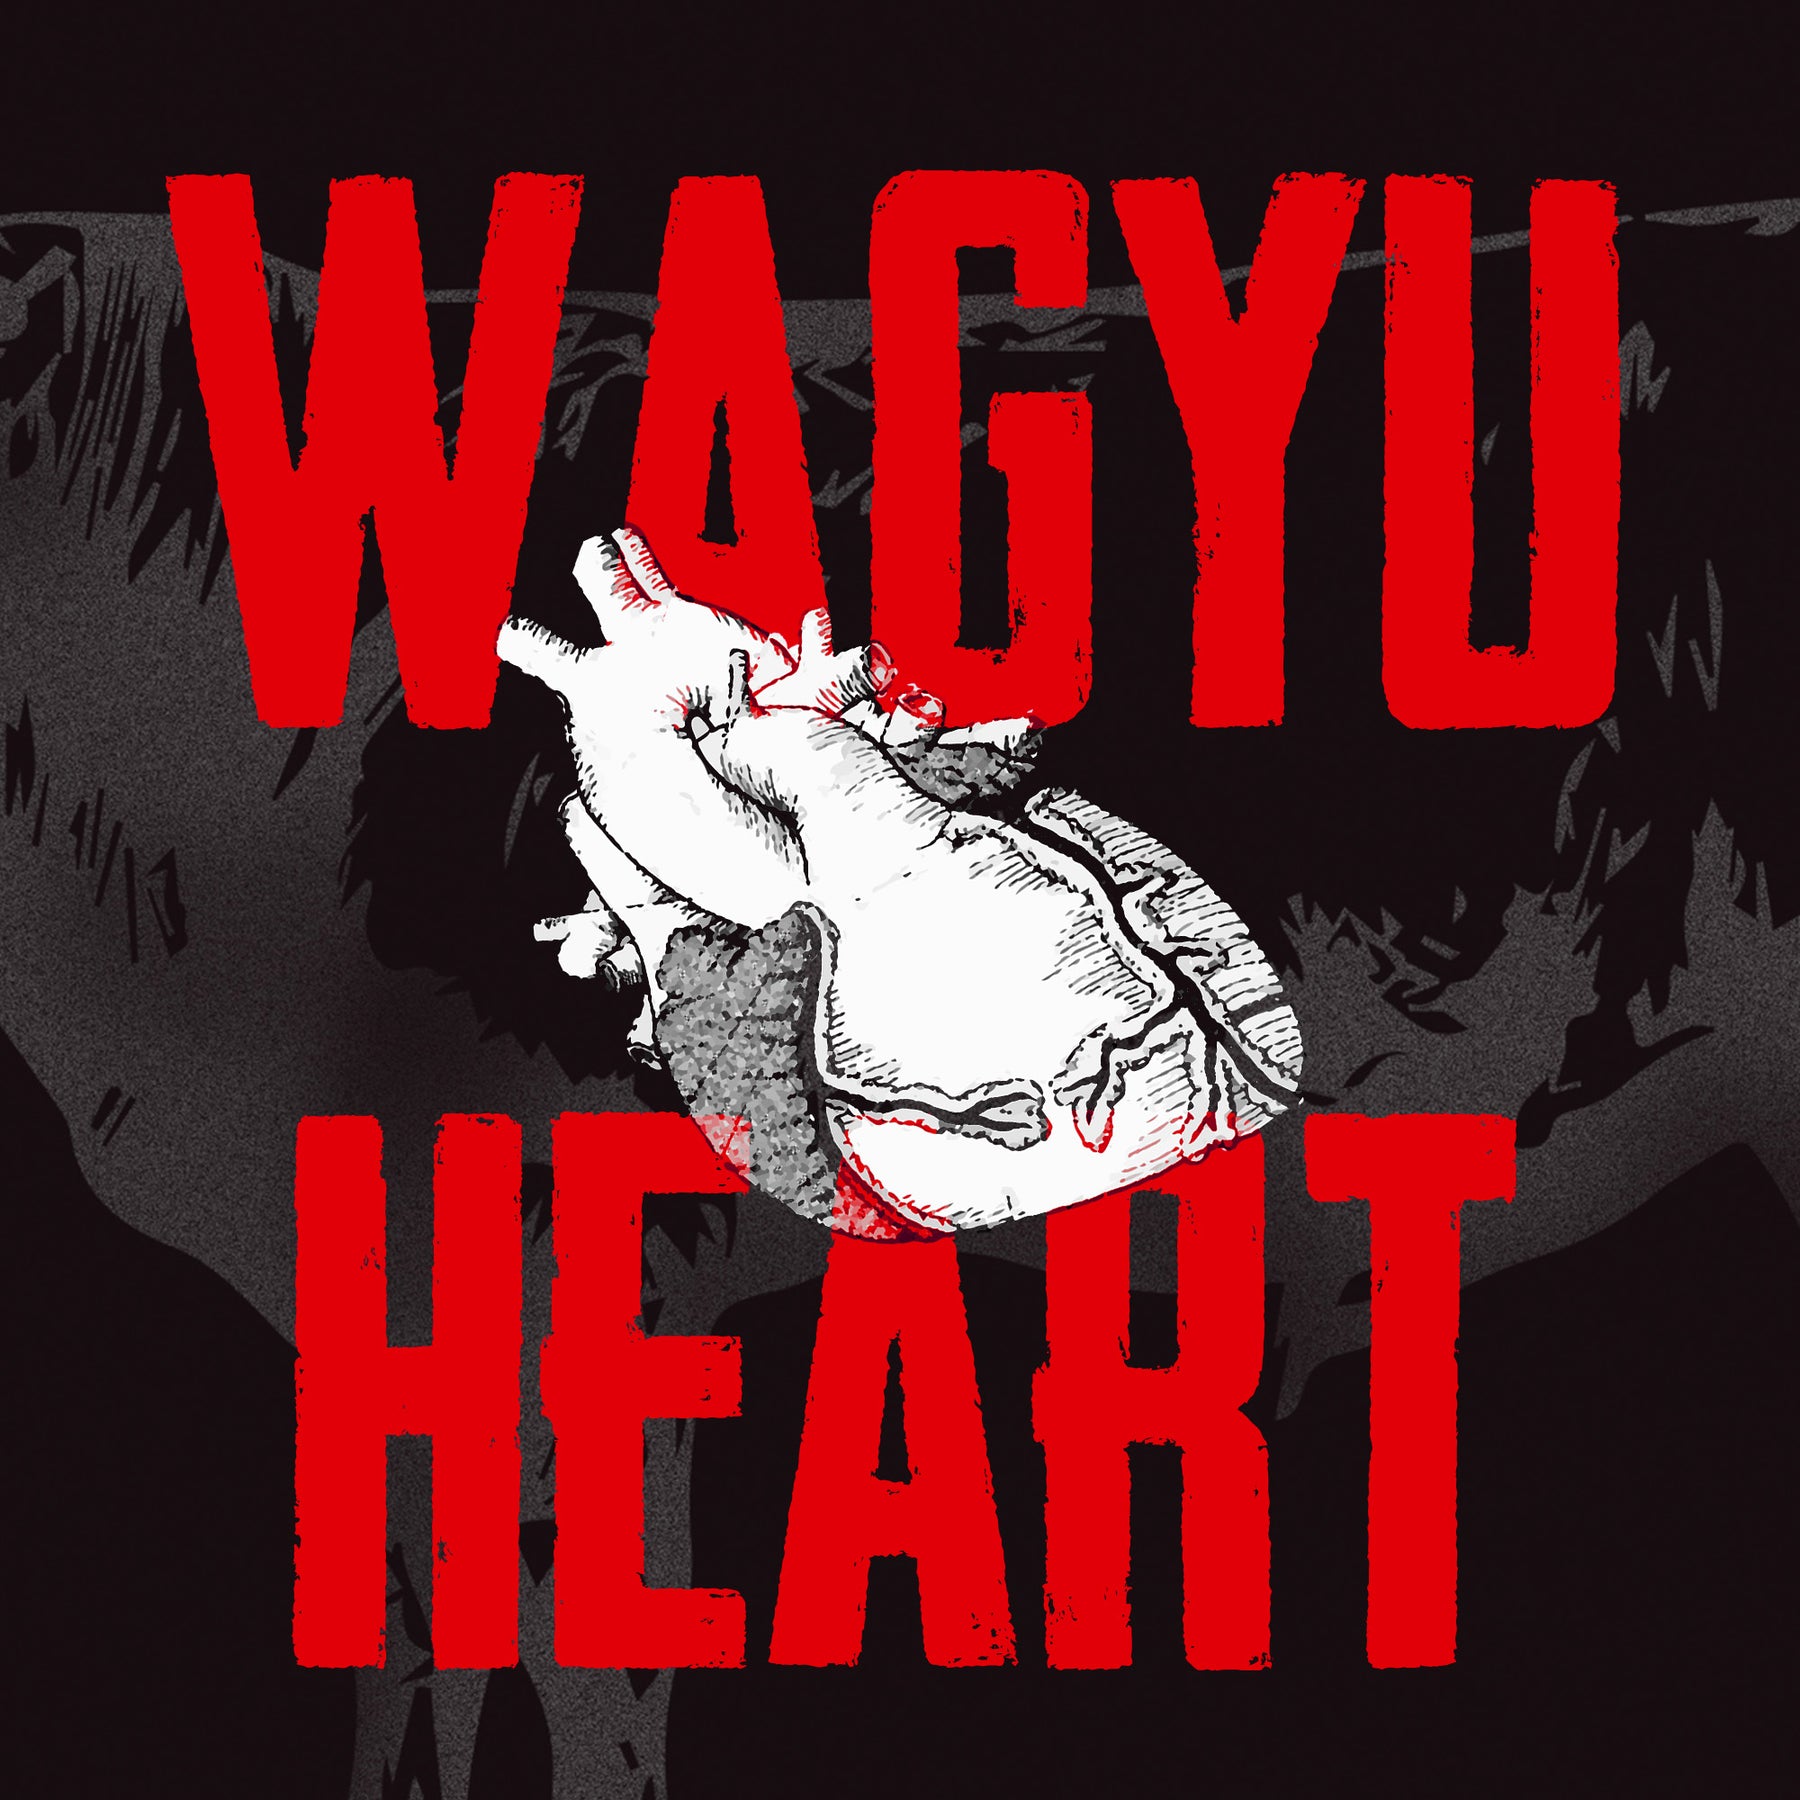 Wagyu Heart